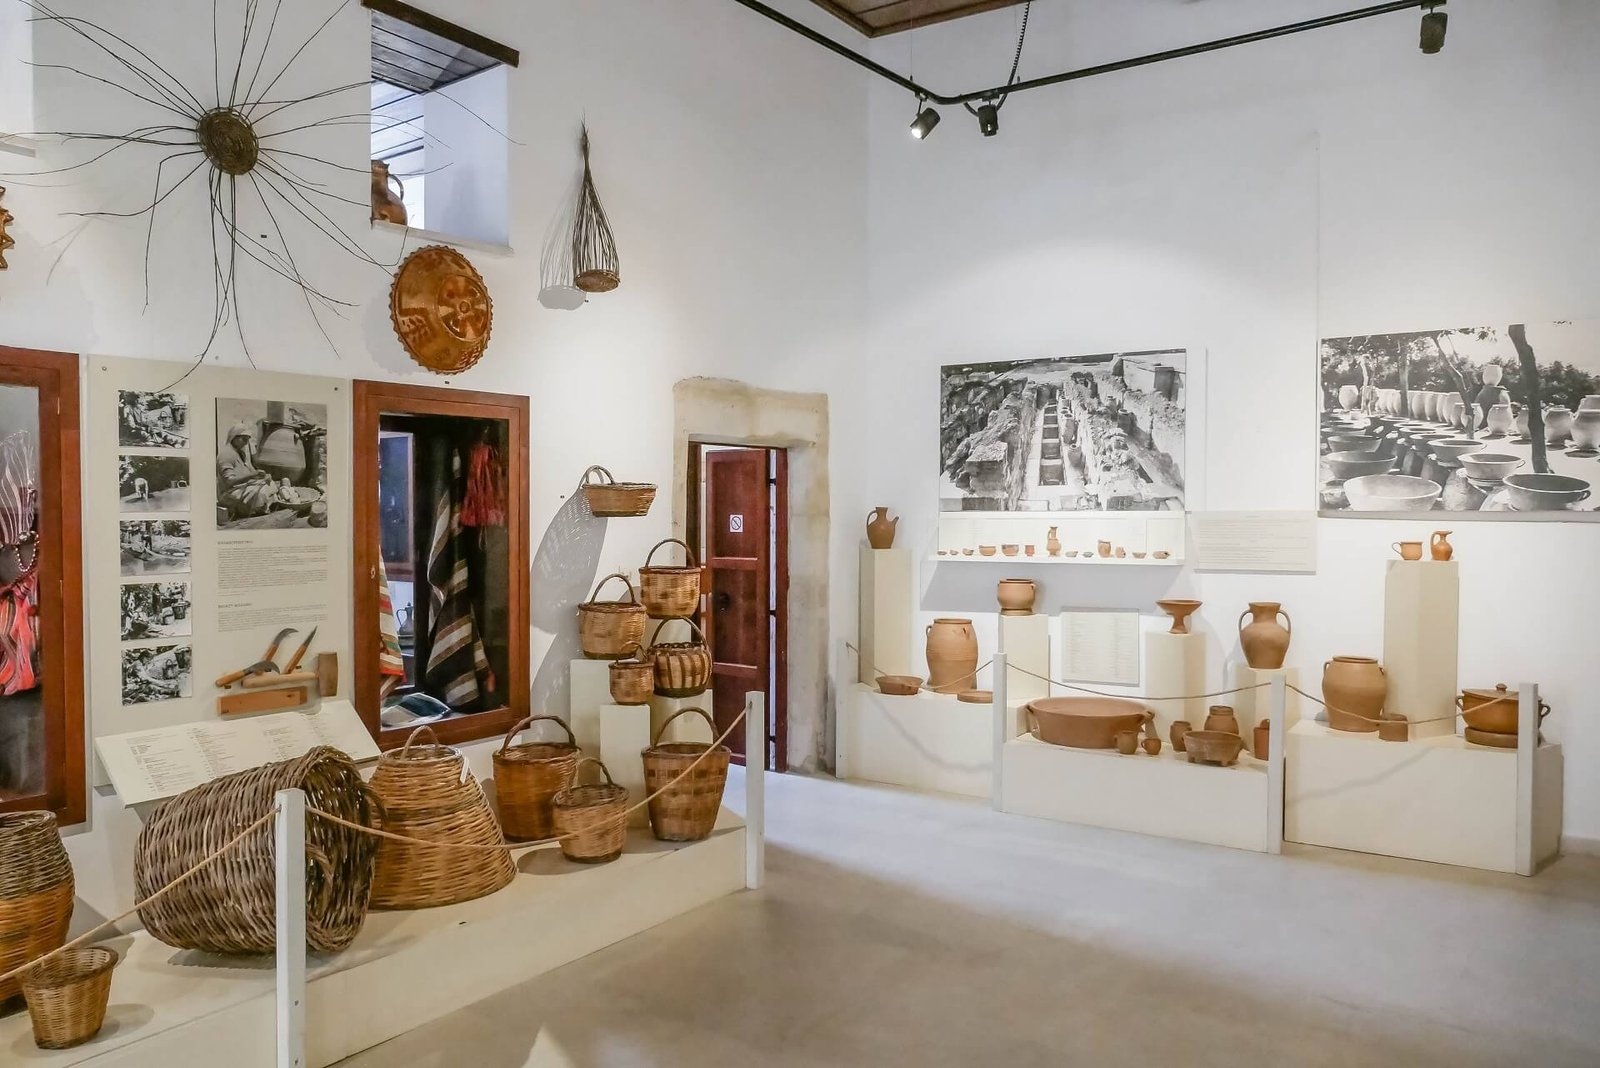 Folkore Museum of Rethymno Crete - allincrete.com